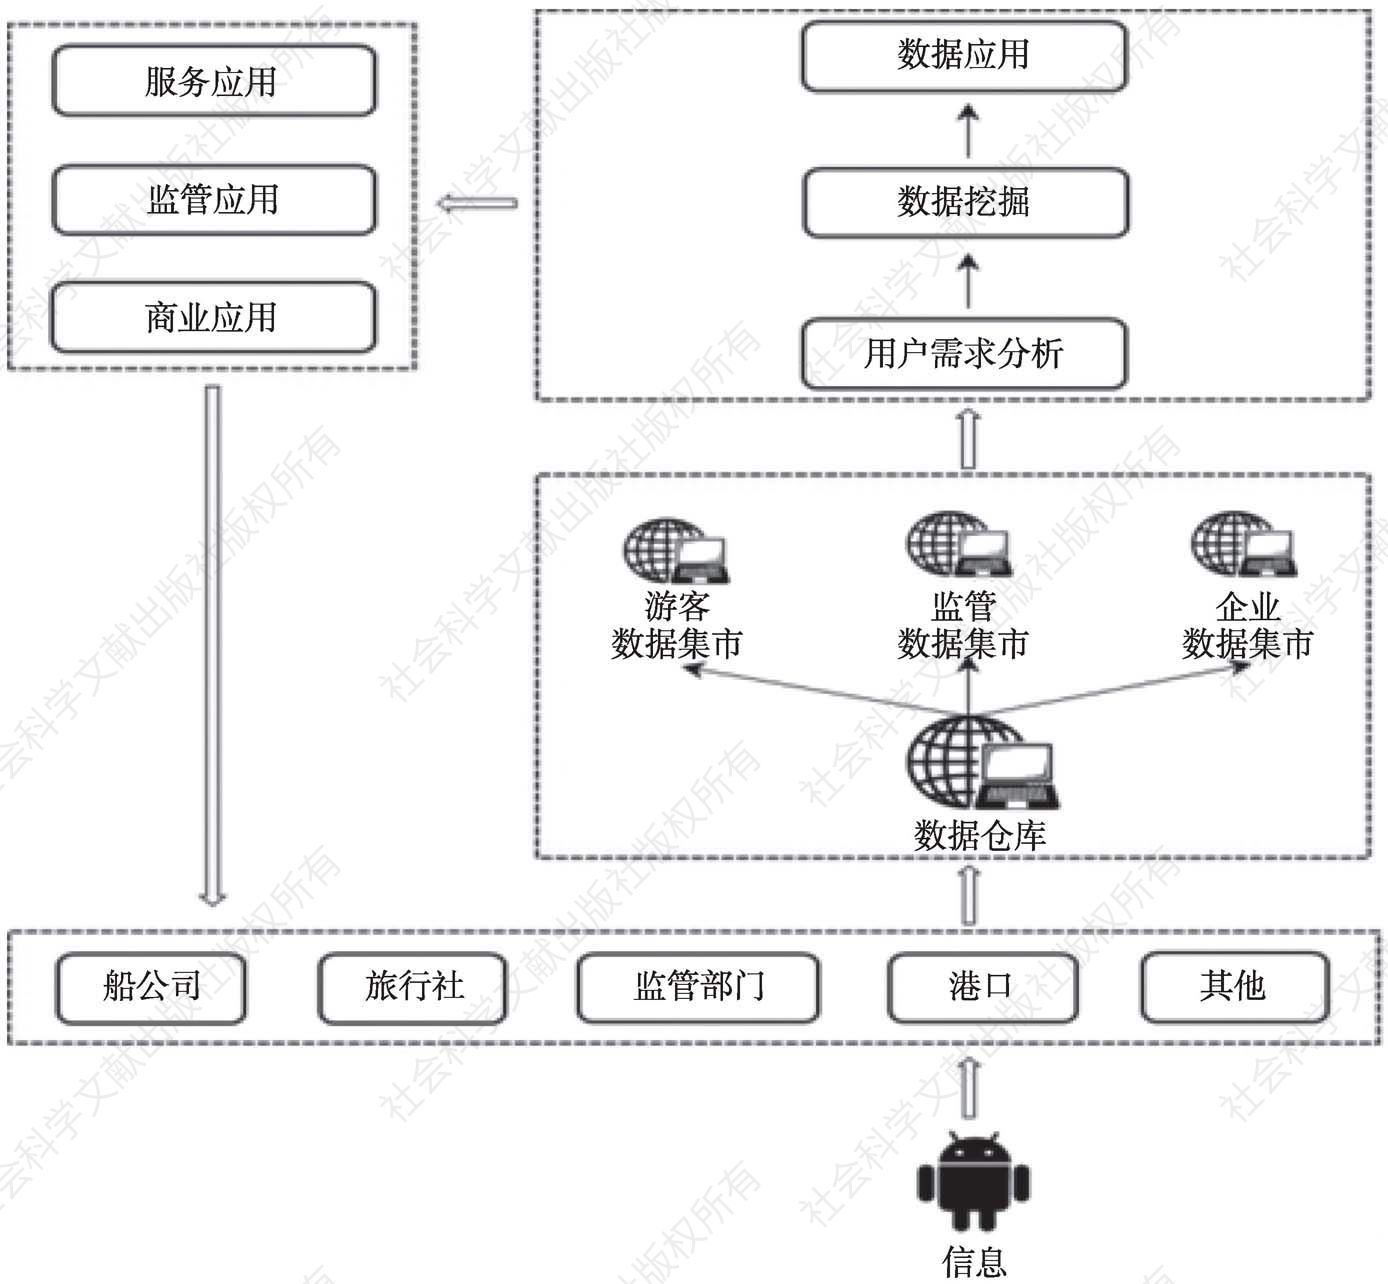 图2 中国邮轮港大数据平台建设实施路径模型